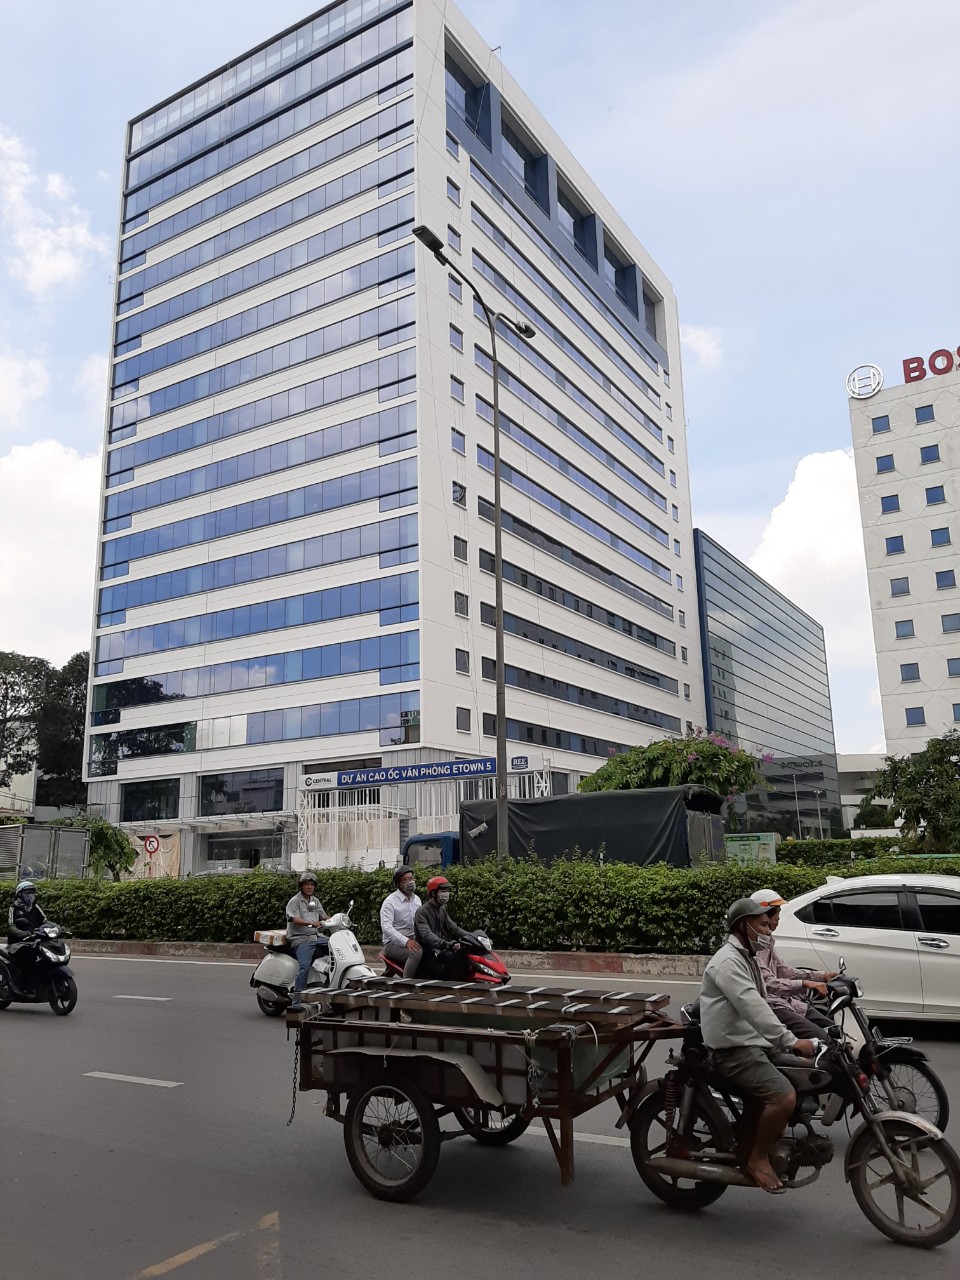 Cần bán gấp tòa nhà ngân hàng mặt tiền Nguyễn Văn Trỗi, DT 11x20m. HĐ thuê 450tr/th, giá 95 tỷ